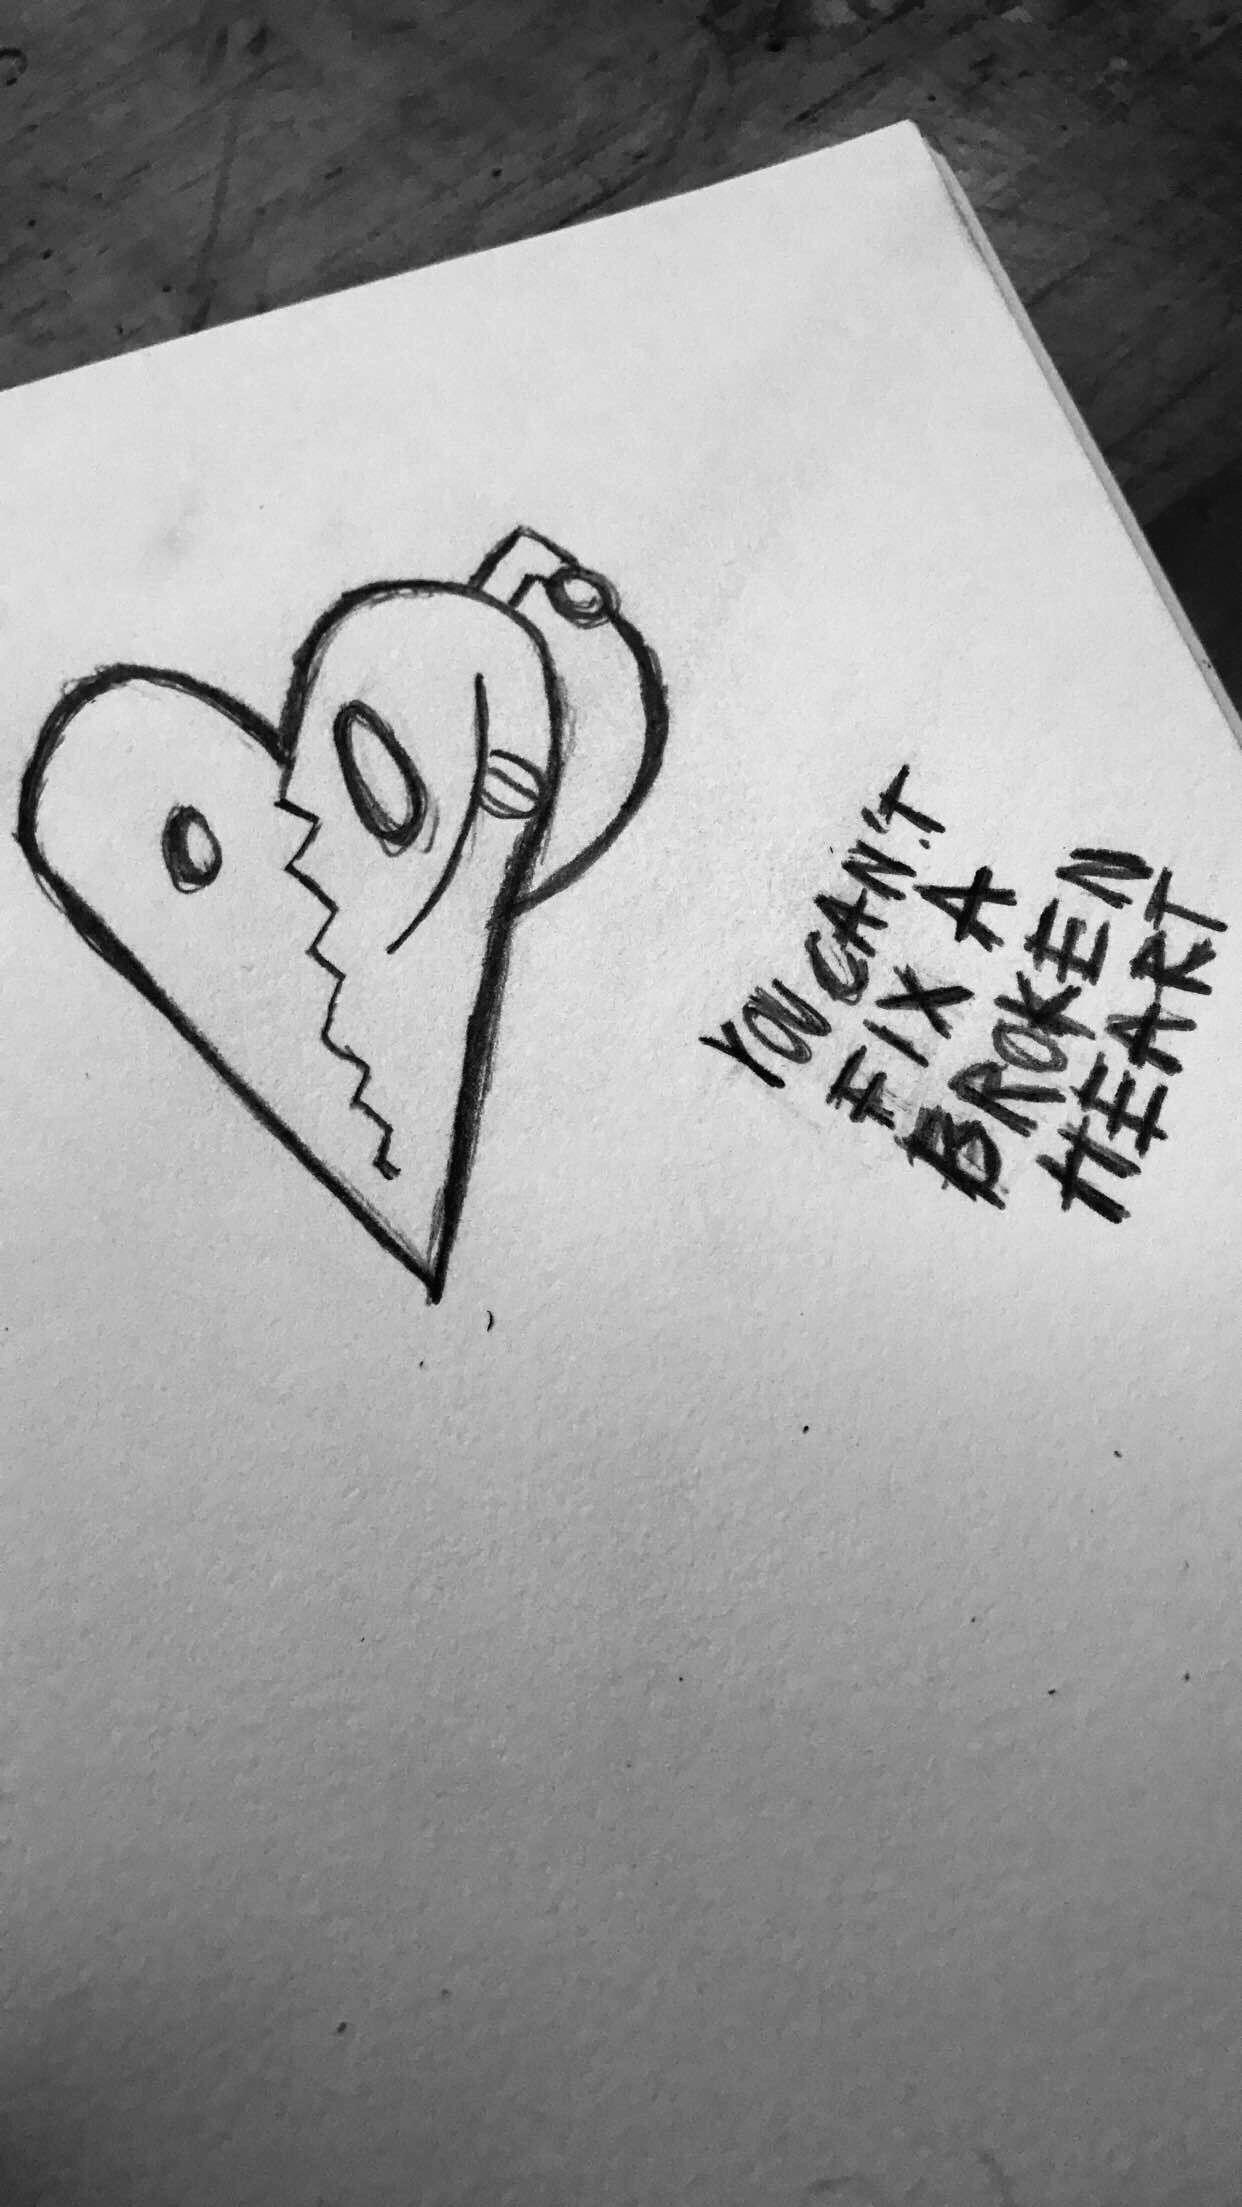 Xxxtentacion Broken Heart Tattoo Wallpaper On